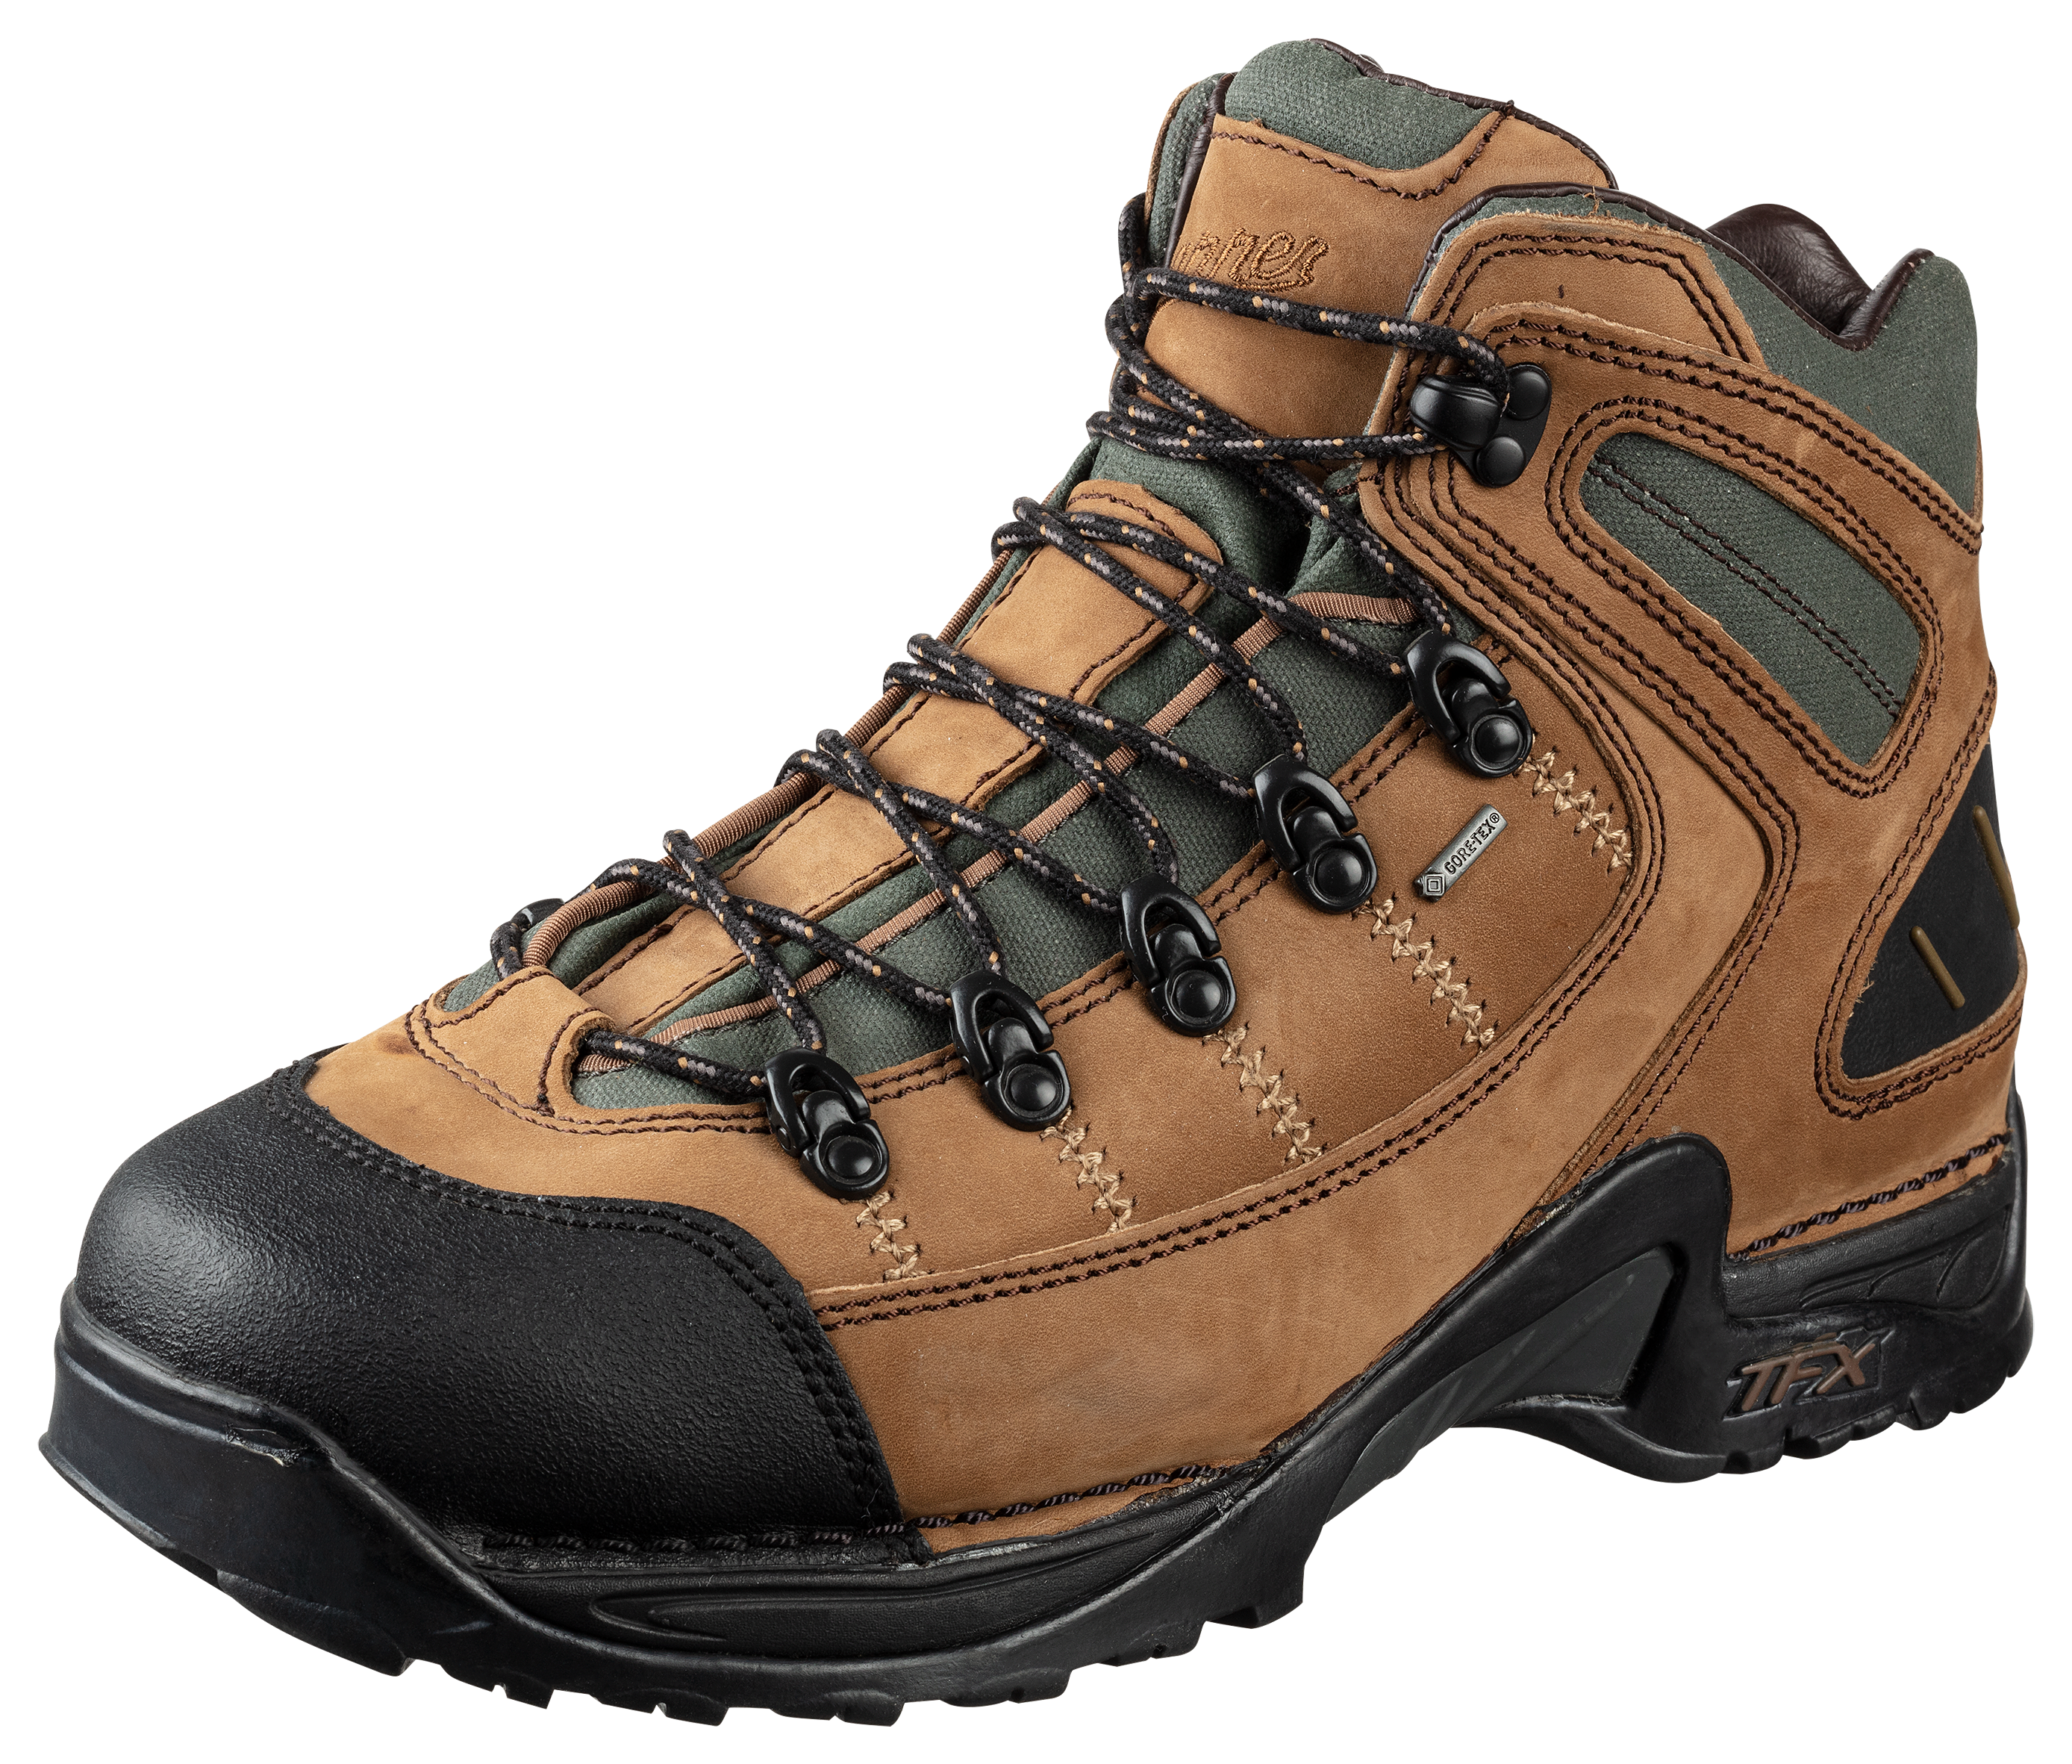 Danner 453 GORE-TEX Waterproof Hiking Boots for Men - Dark Tan - 7.5M